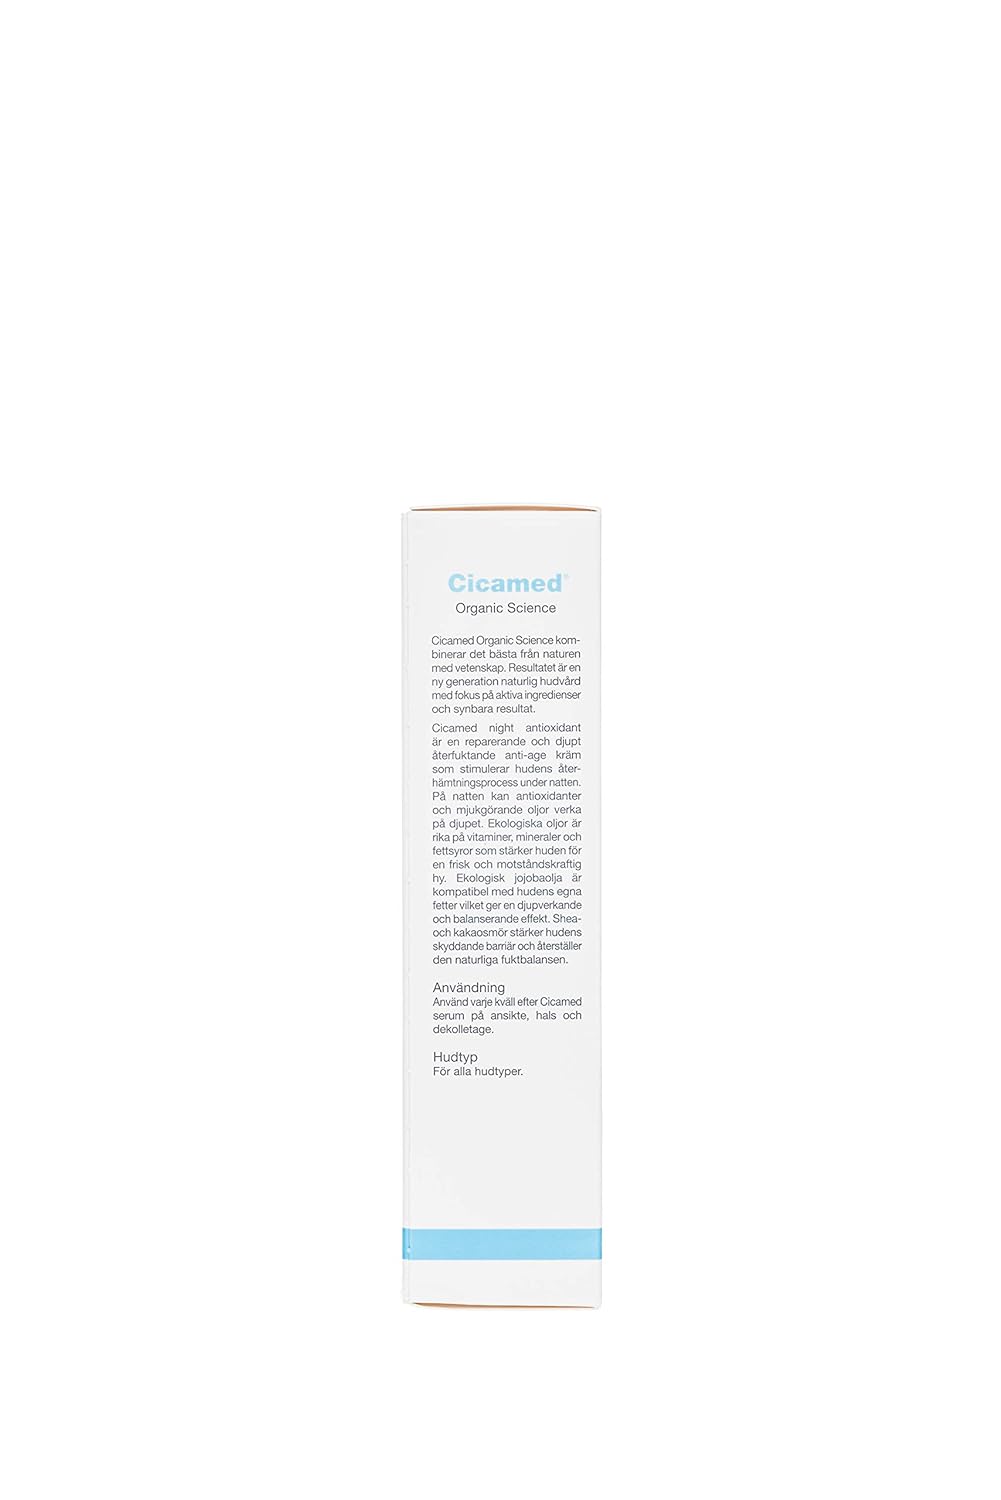 Esupli.com Advanced Night Repair Antioxidant Facial Moisturizer Cream, 